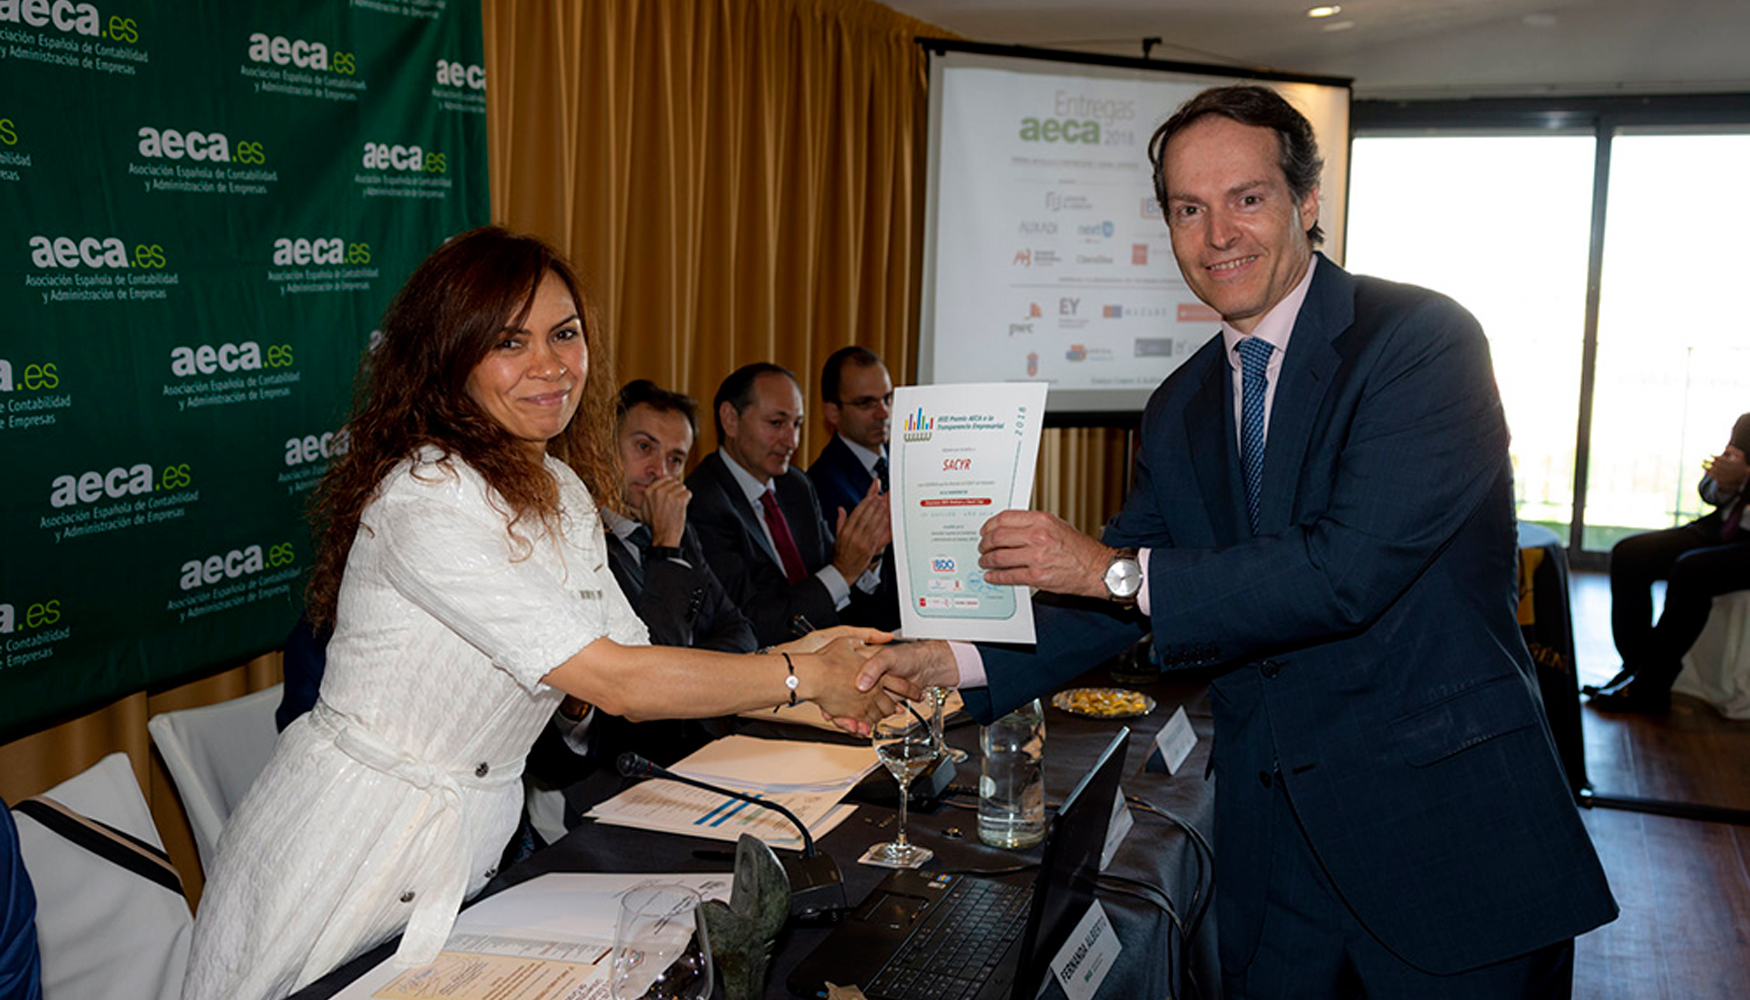 Carlos Mijangos, director general financiero de Sacyr, recogi este reconocimiento a la transparencia corporativa